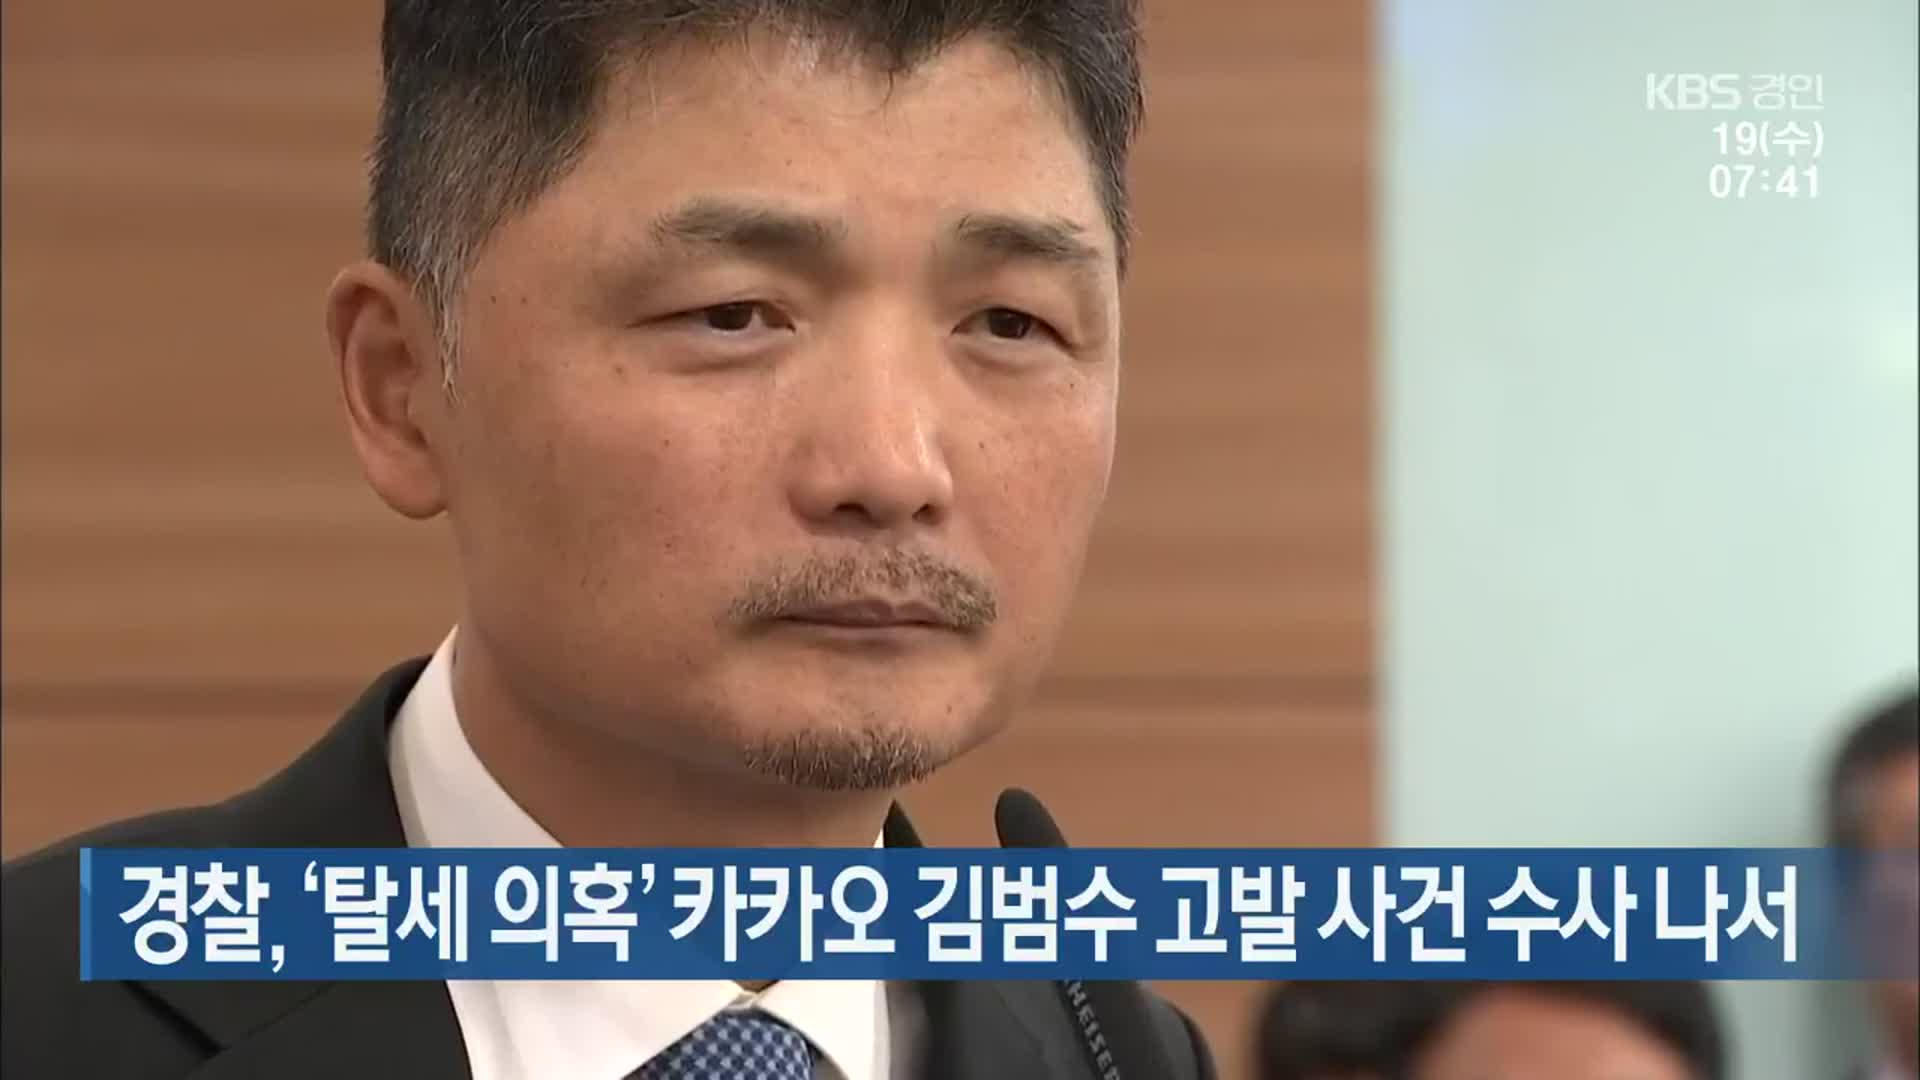 경찰, ‘탈세 의혹’ 카카오 김범수 고발 사건 수사 나서